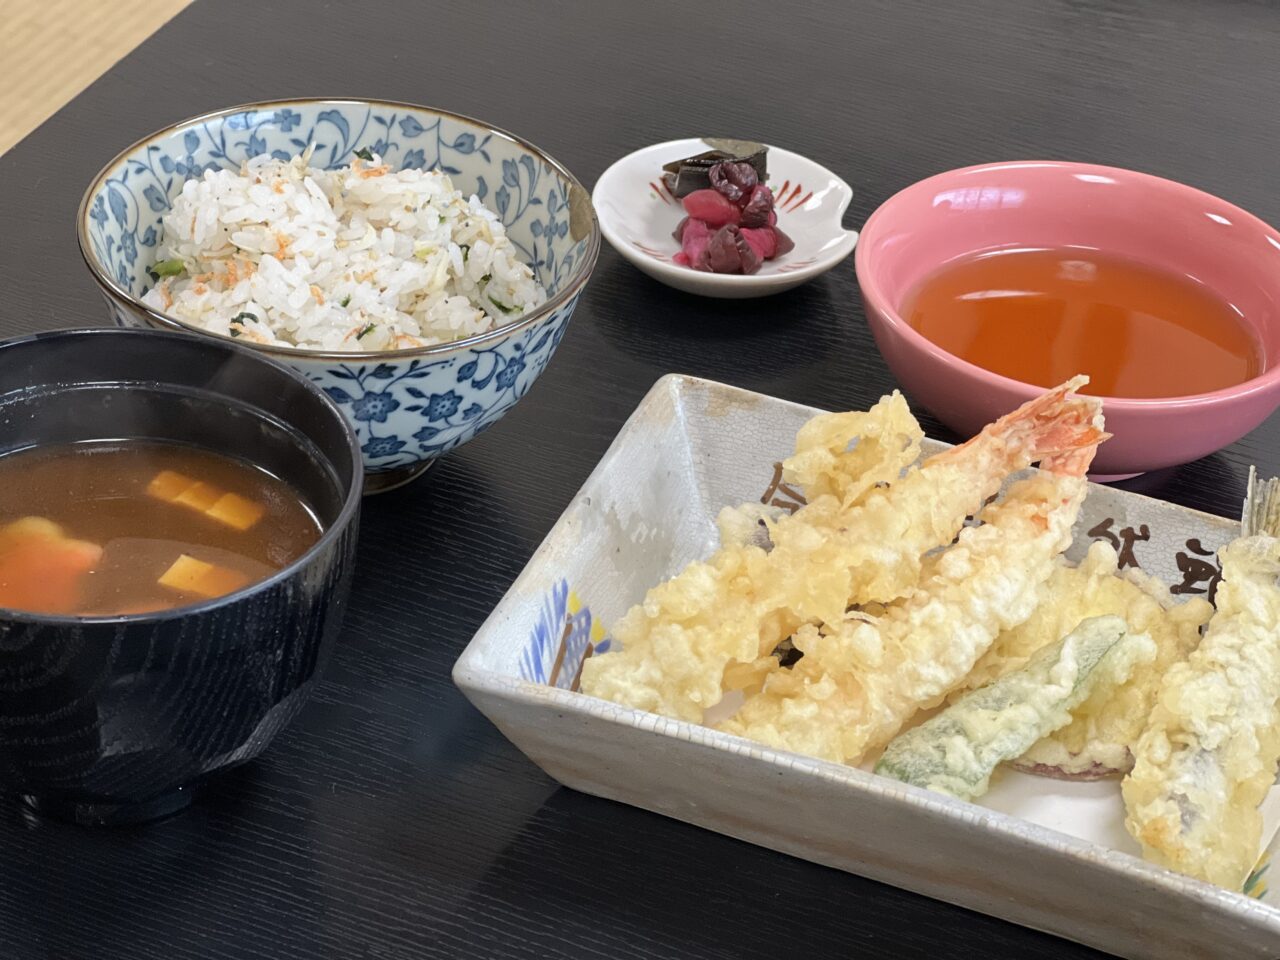 大阪府八尾市にある懐石料理「佑和」のランチの天婦羅と味噌汁とご飯です。